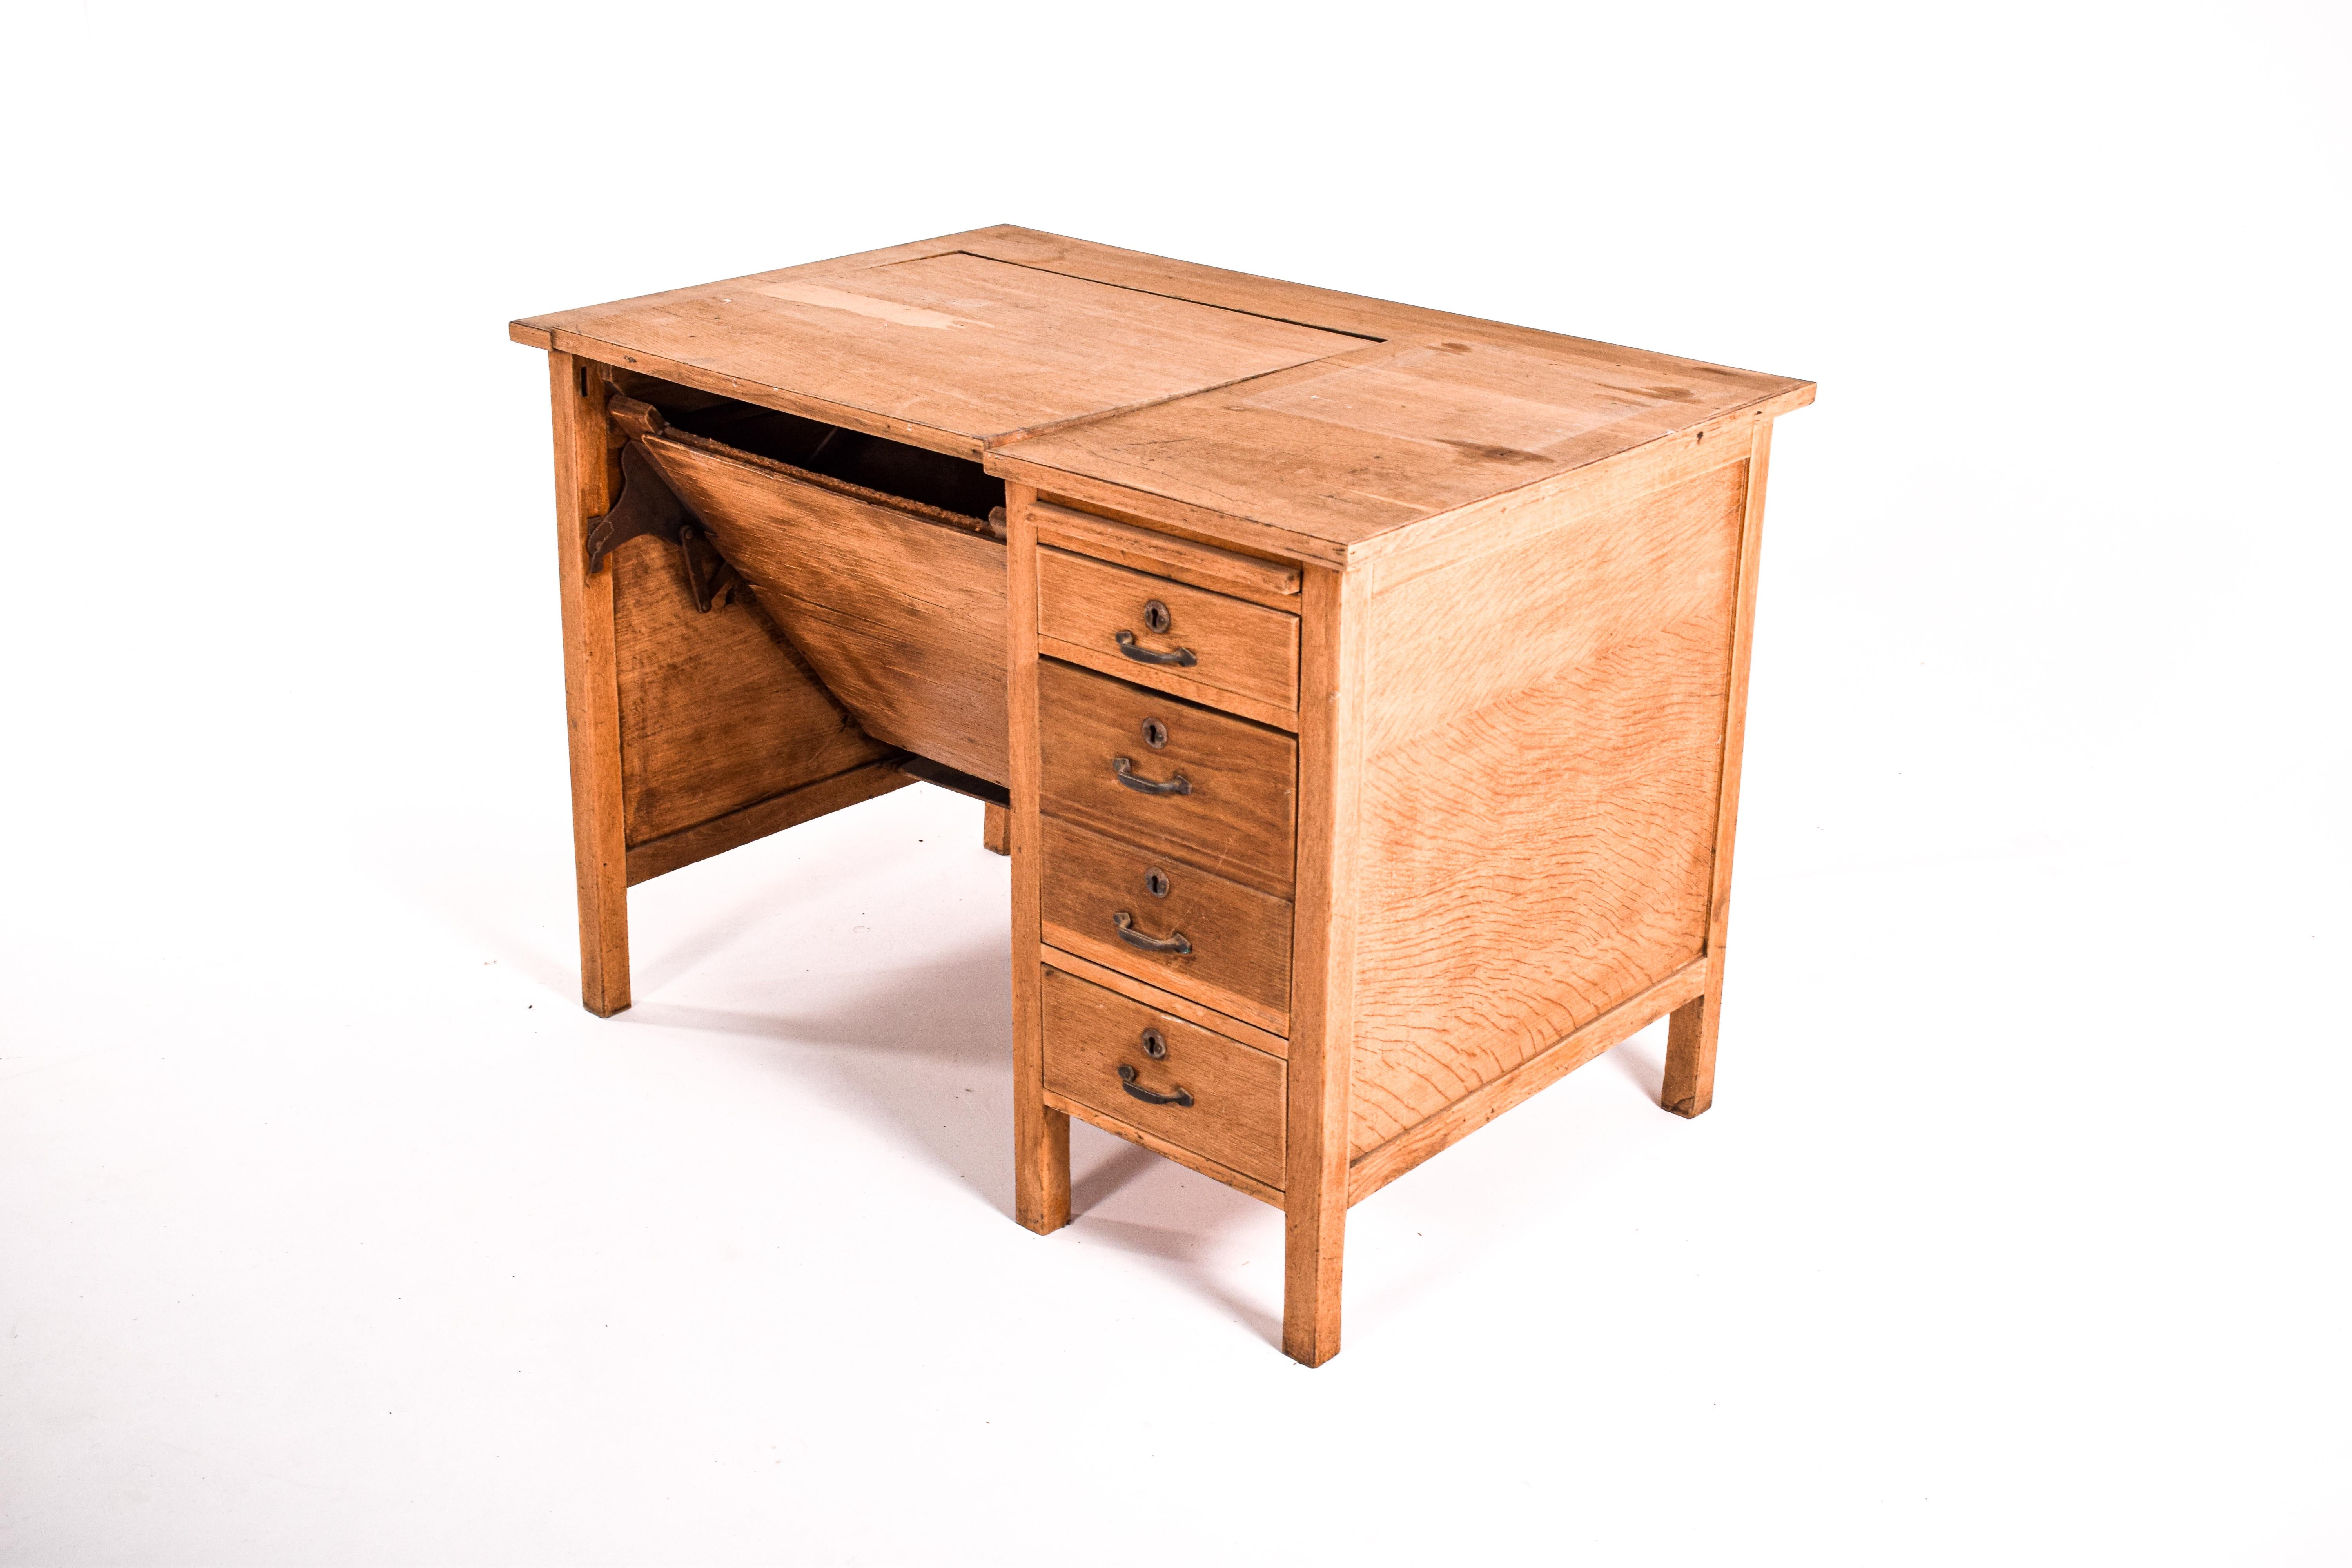 Seltener Schreibtisch aus der portugiesischen Fabrik Olaio. Hergestellt im Jahr 1950 aus Eichenholz. Dieser Schreibtisch hat 3 Schubladen, eine davon ist ein Ordner. Ein Reißbrett. Abnehmbarer Deckel mit Platz zum Aufbewahren der Schreibmaschine.